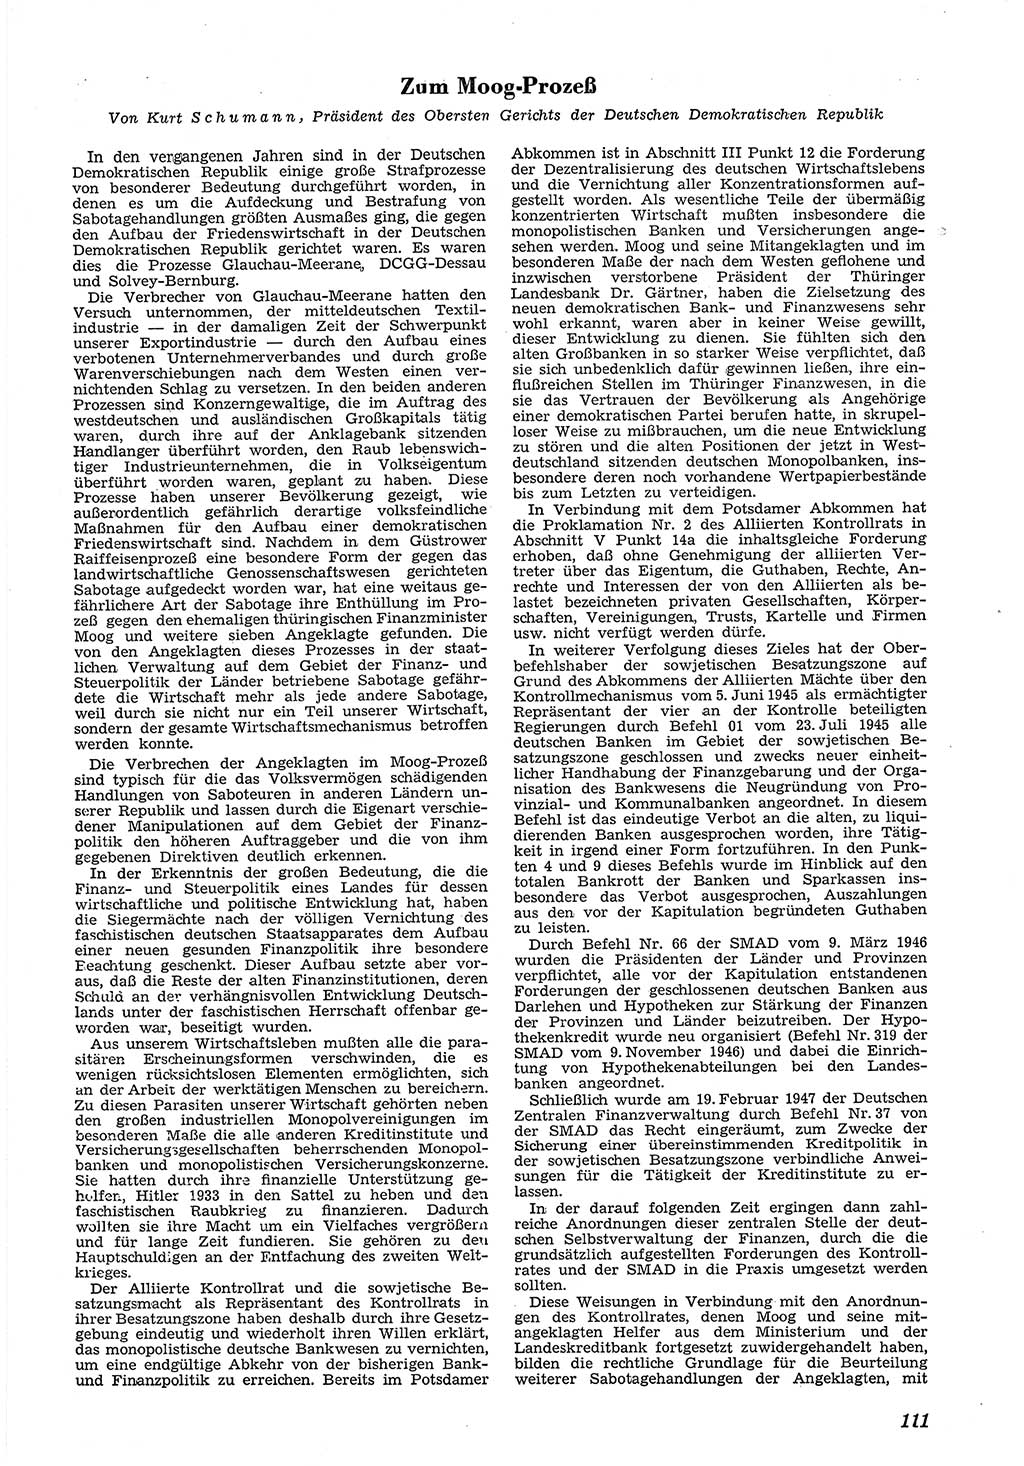 Neue Justiz (NJ), Zeitschrift für Recht und Rechtswissenschaft [Deutsche Demokratische Republik (DDR)], 5. Jahrgang 1951, Seite 111 (NJ DDR 1951, S. 111)